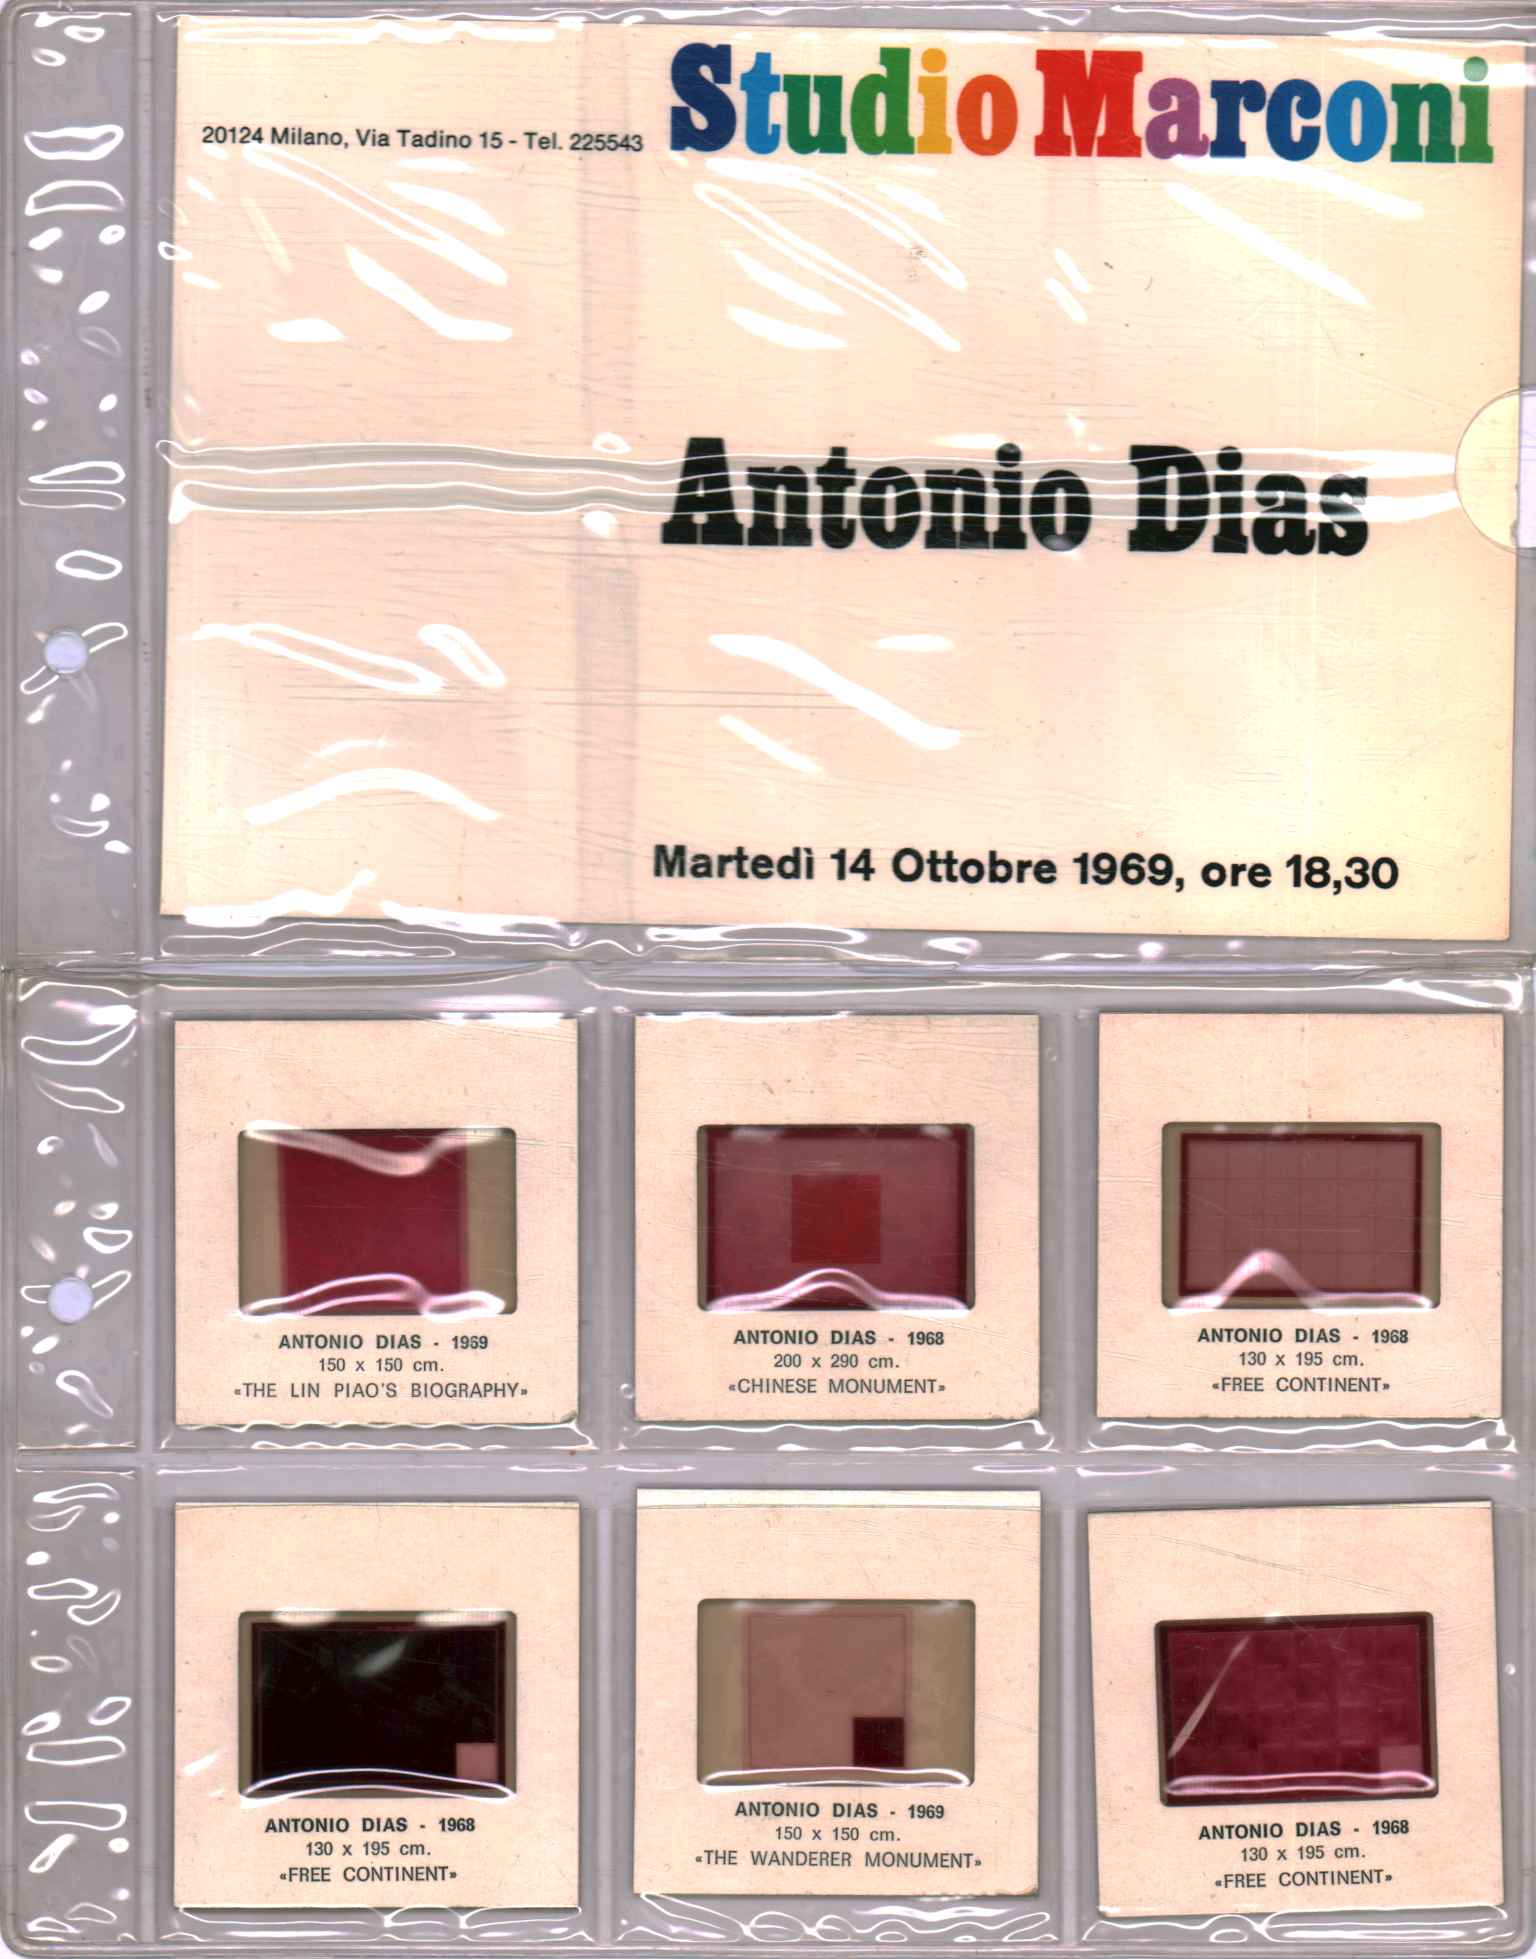 Antonio Dias (6 slides)